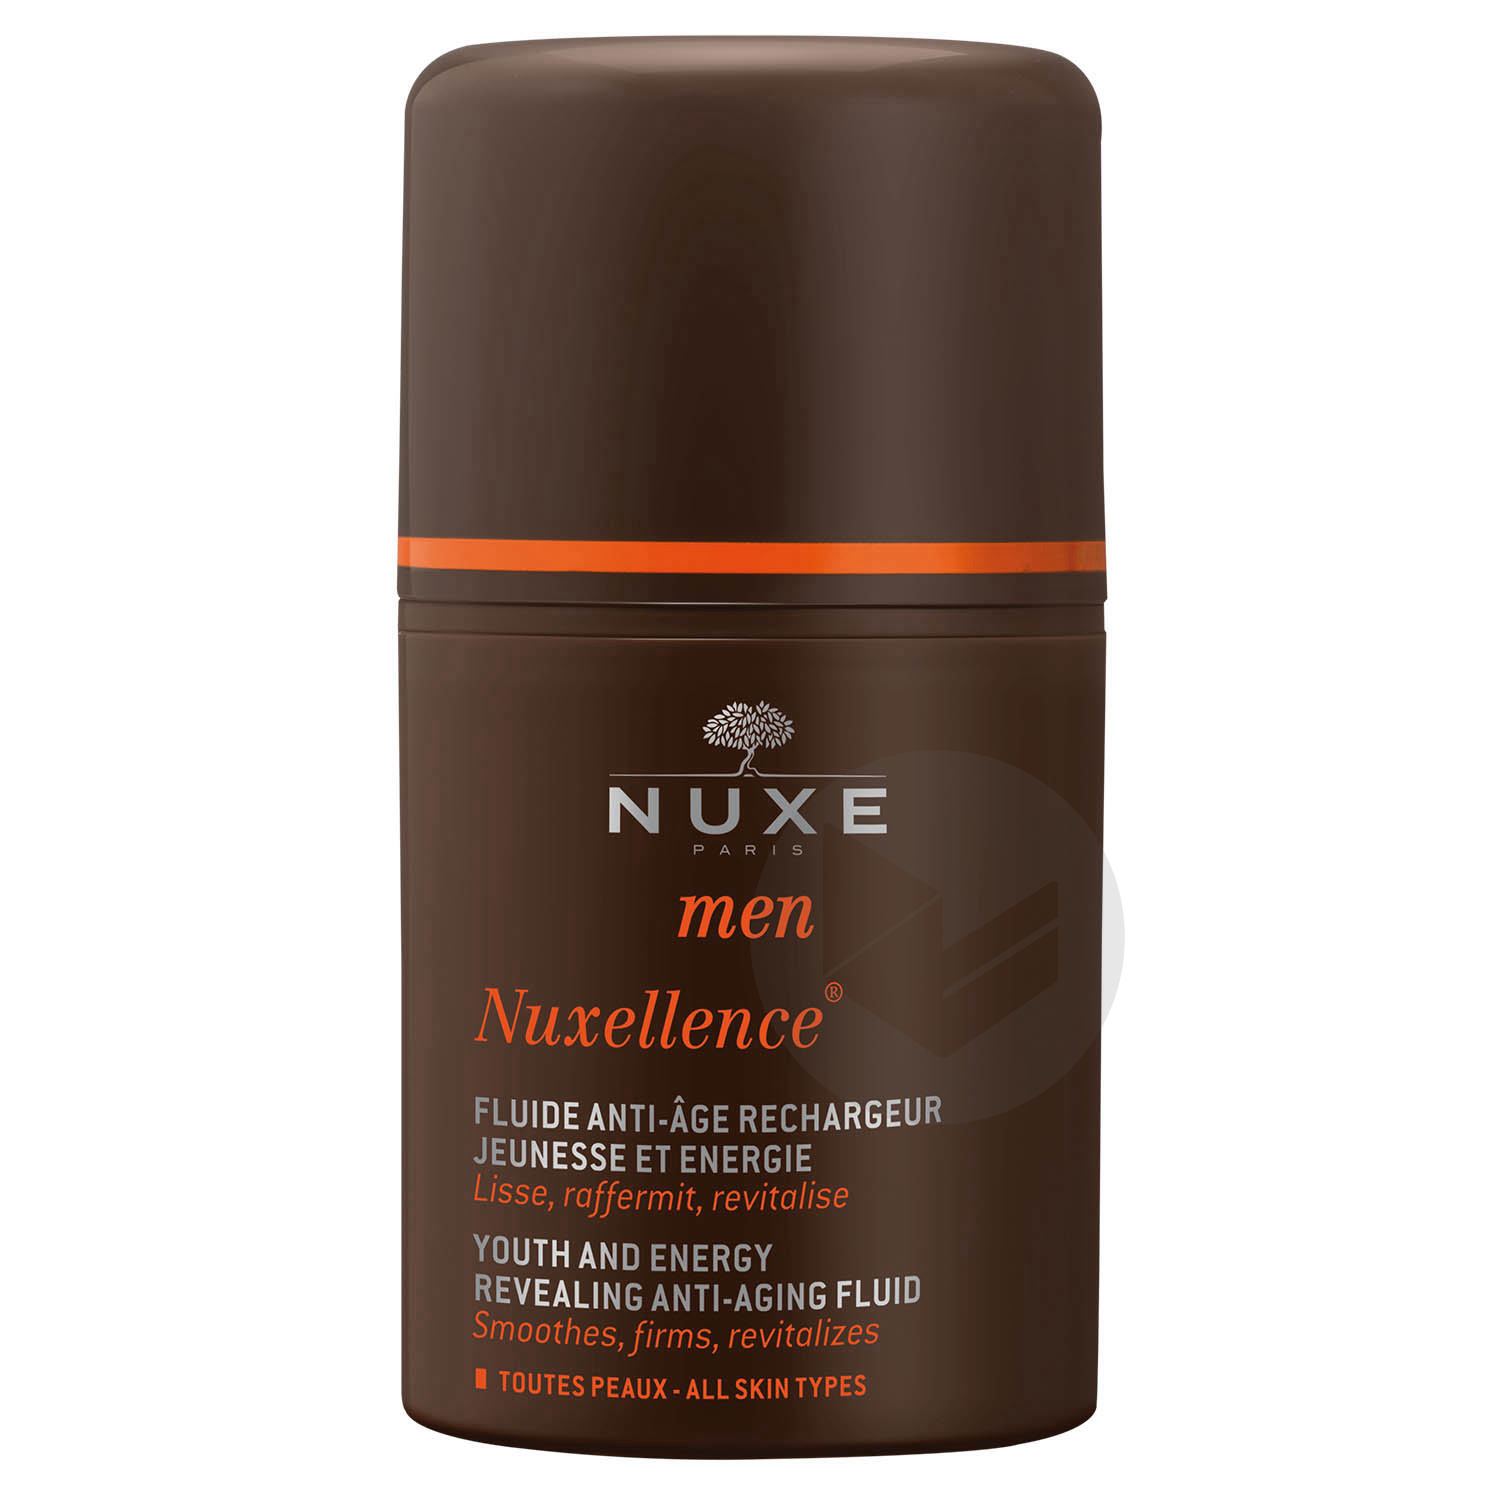 Nuxellence®, fluide anti-âge rechargeur de jeunesse Nuxe Men